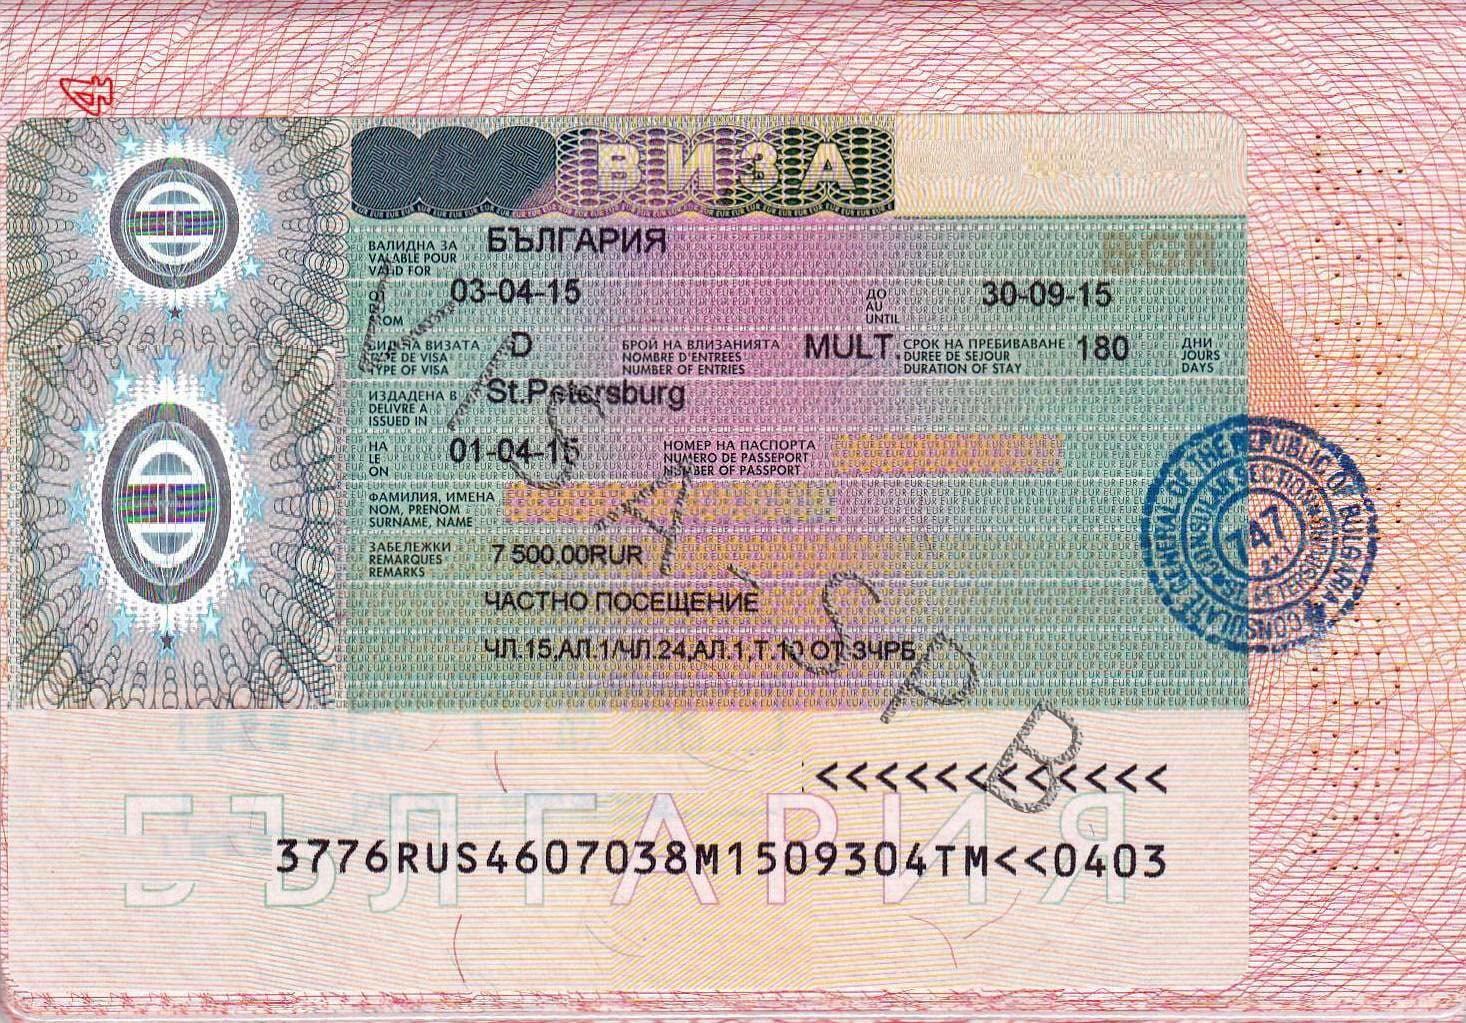 Как сделать визу в болгарию через турагентство — все о визах и эмиграции